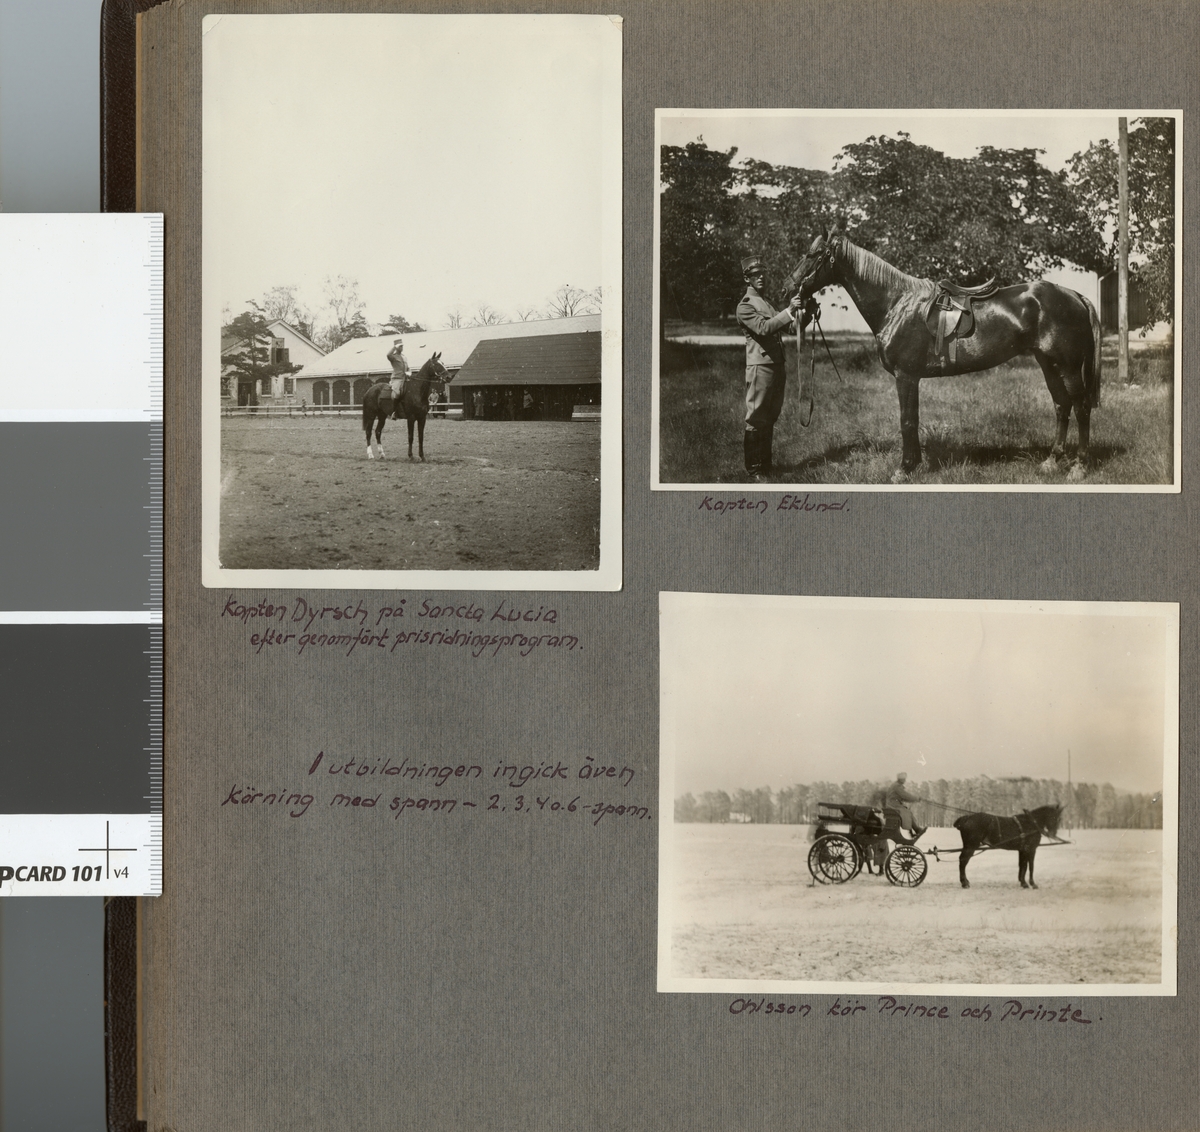 Text i fotoalbum: "Officersaspirantskolan 1925-1926. I utbildningen ingick även körning med spann - 2. 3. 4. o 6-spann".